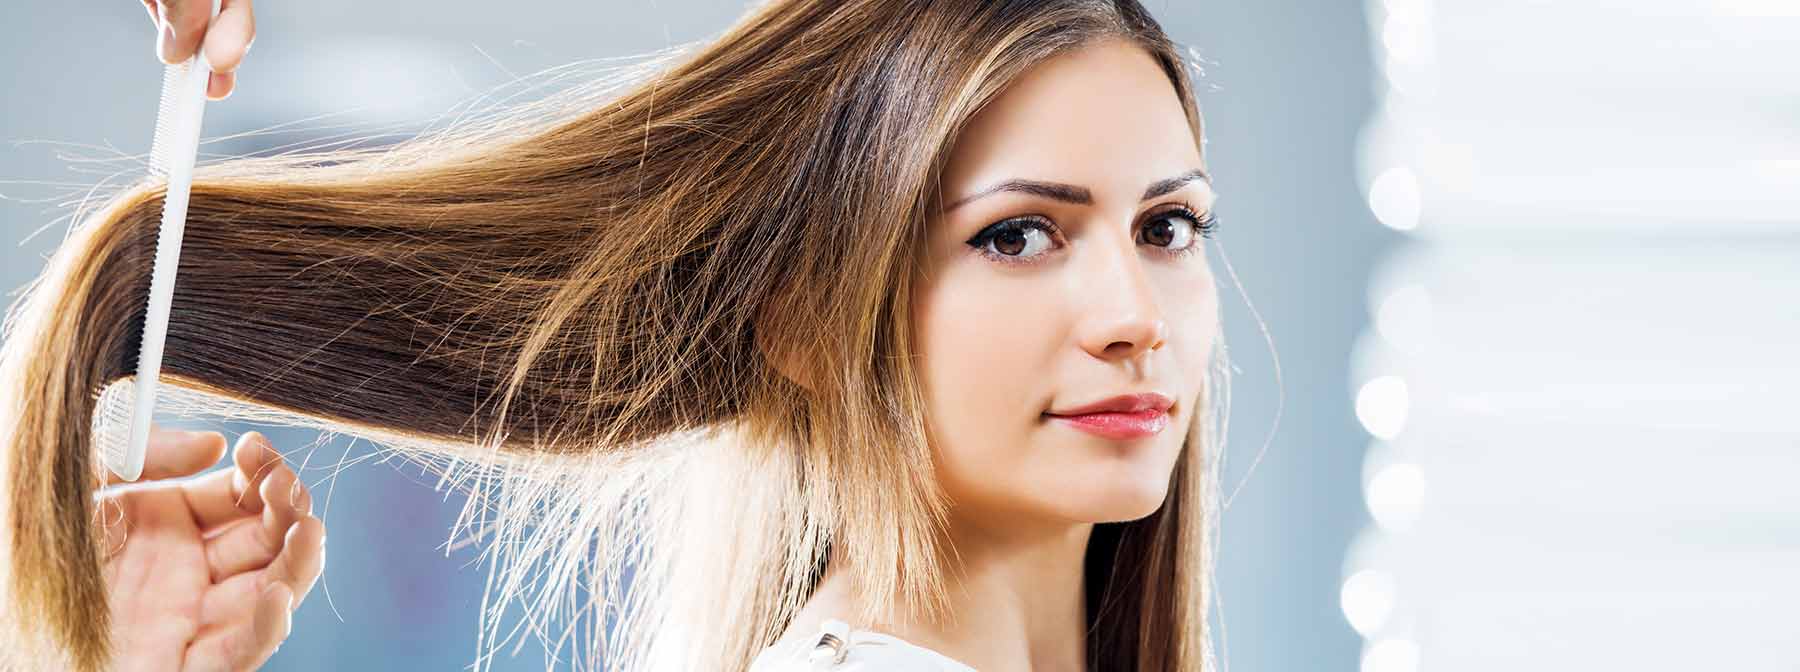 Comment faire pousser les cheveux plus vite?